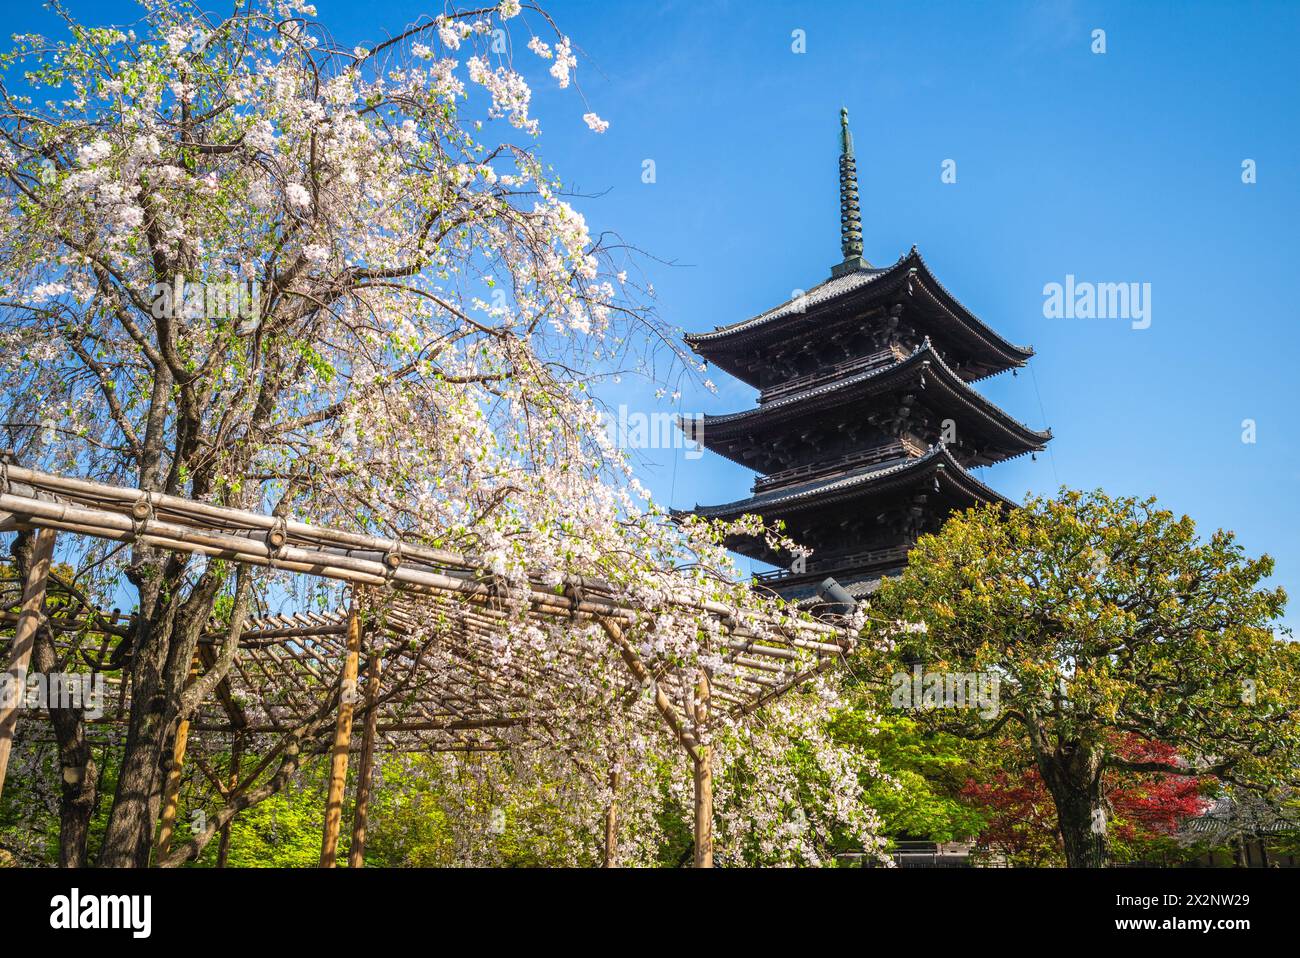 Trésor national cinq étages pagode du temple Toji à Kyoto, Japon avec des fleurs de cerisier Banque D'Images